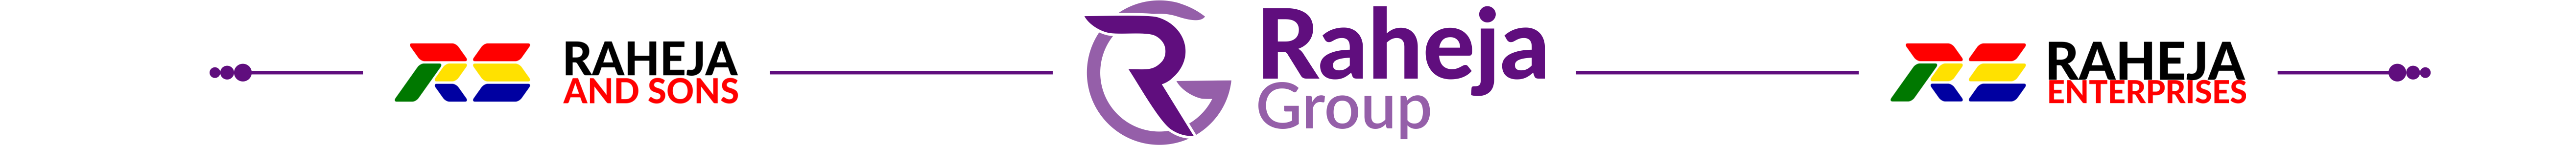 Raheja Group 2